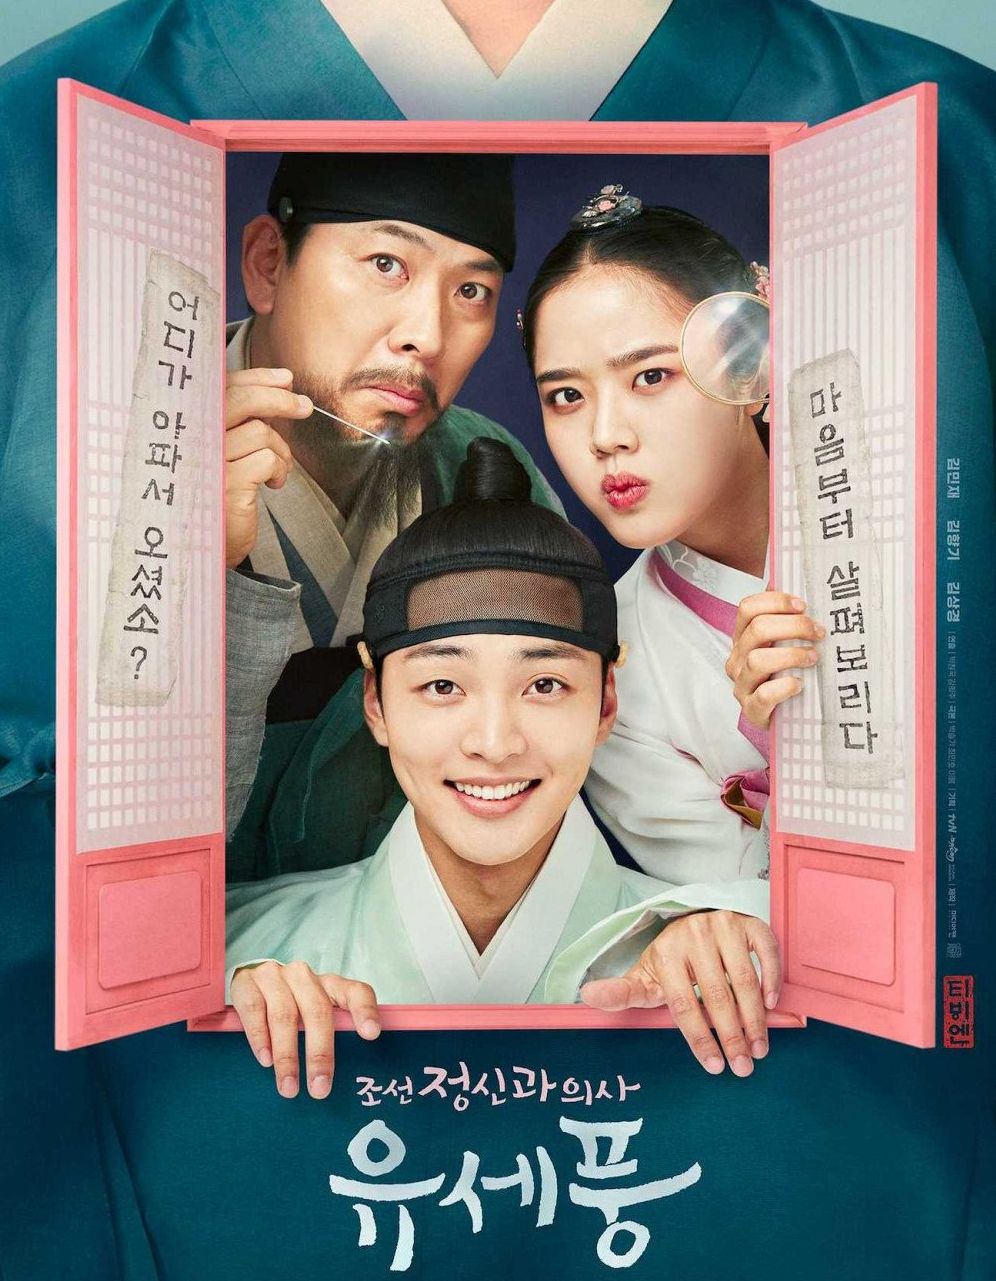 Sinopsis Poong The Joseon Psychiatrist, Lengkap dengan Jadwal Tayang, Episode Perdana Mulai 1 Agustus 2022.